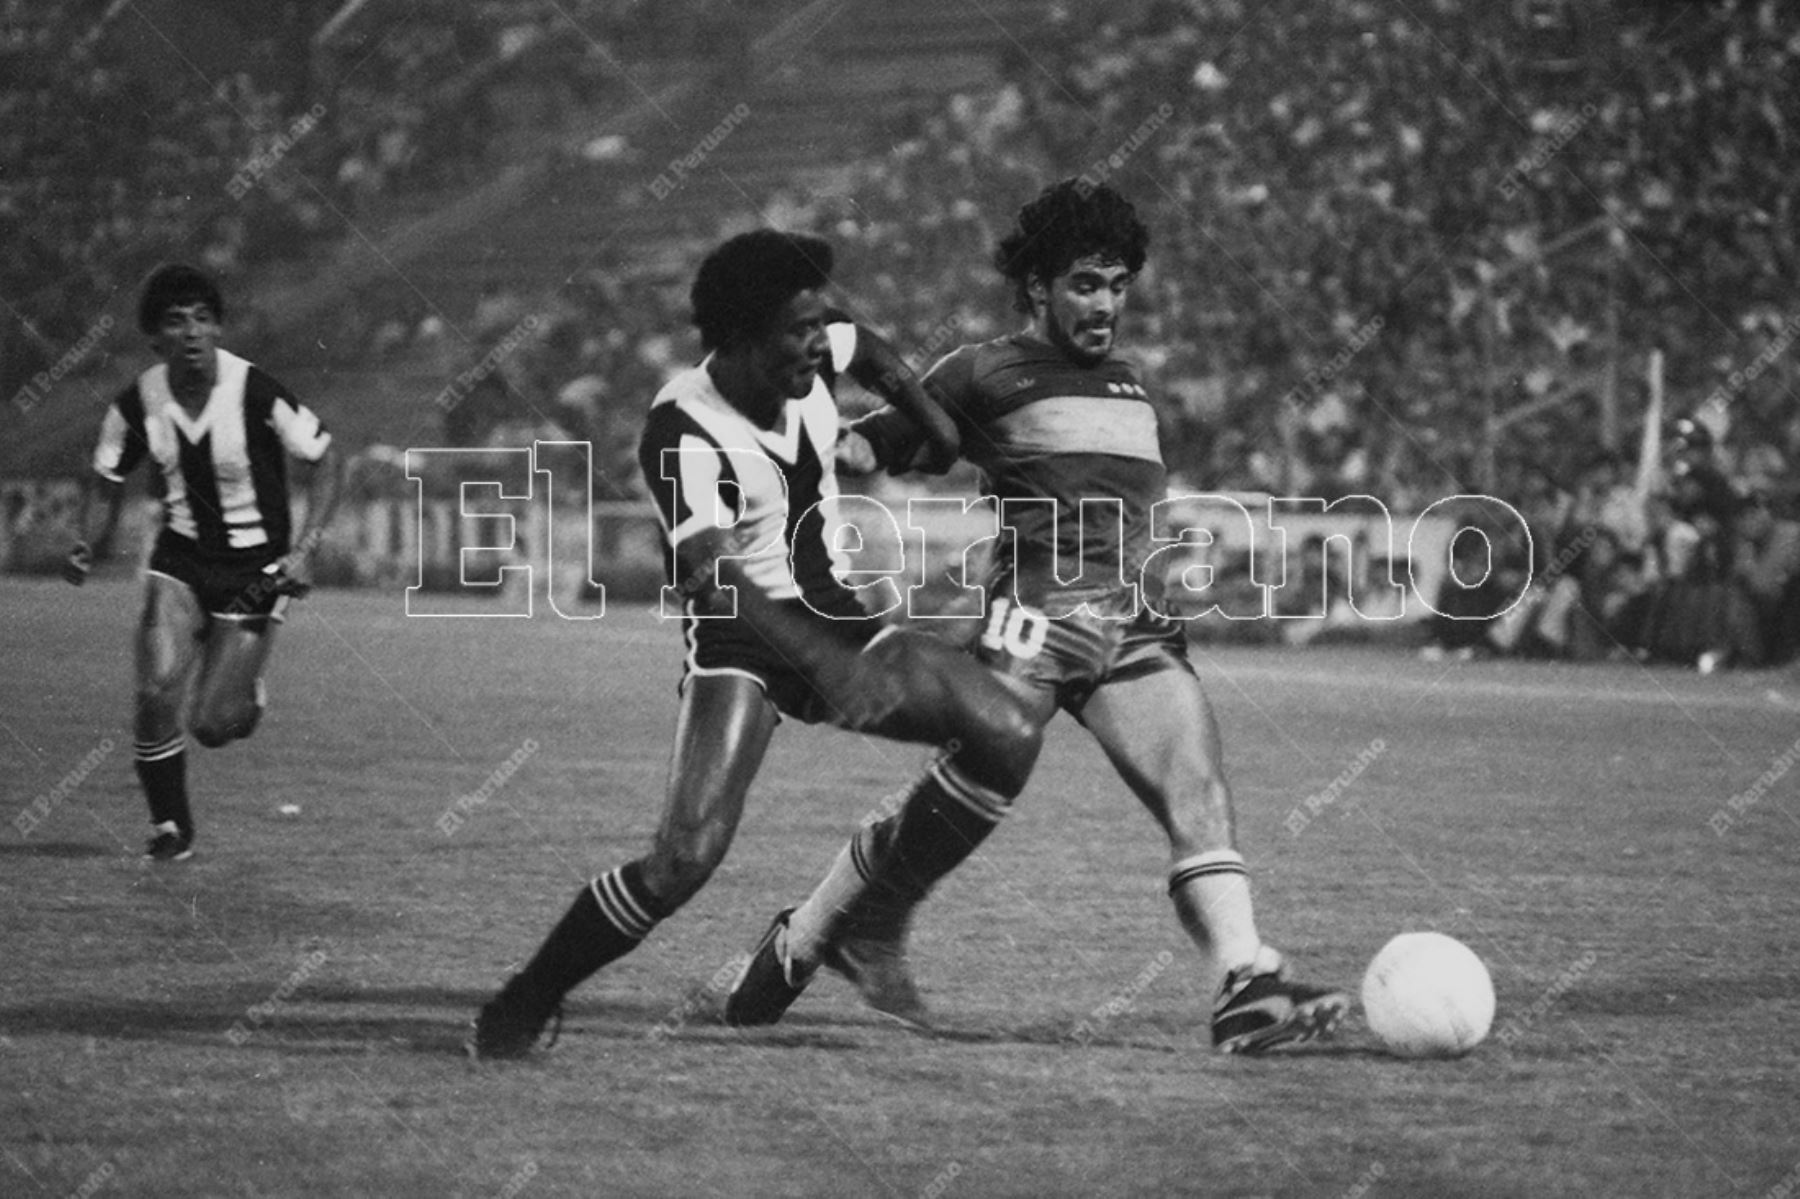 Diego Maradona cumple 60 años: recuerda su inolvidable paso por Perú | Noticias | Agencia Peruana de Noticias Andina